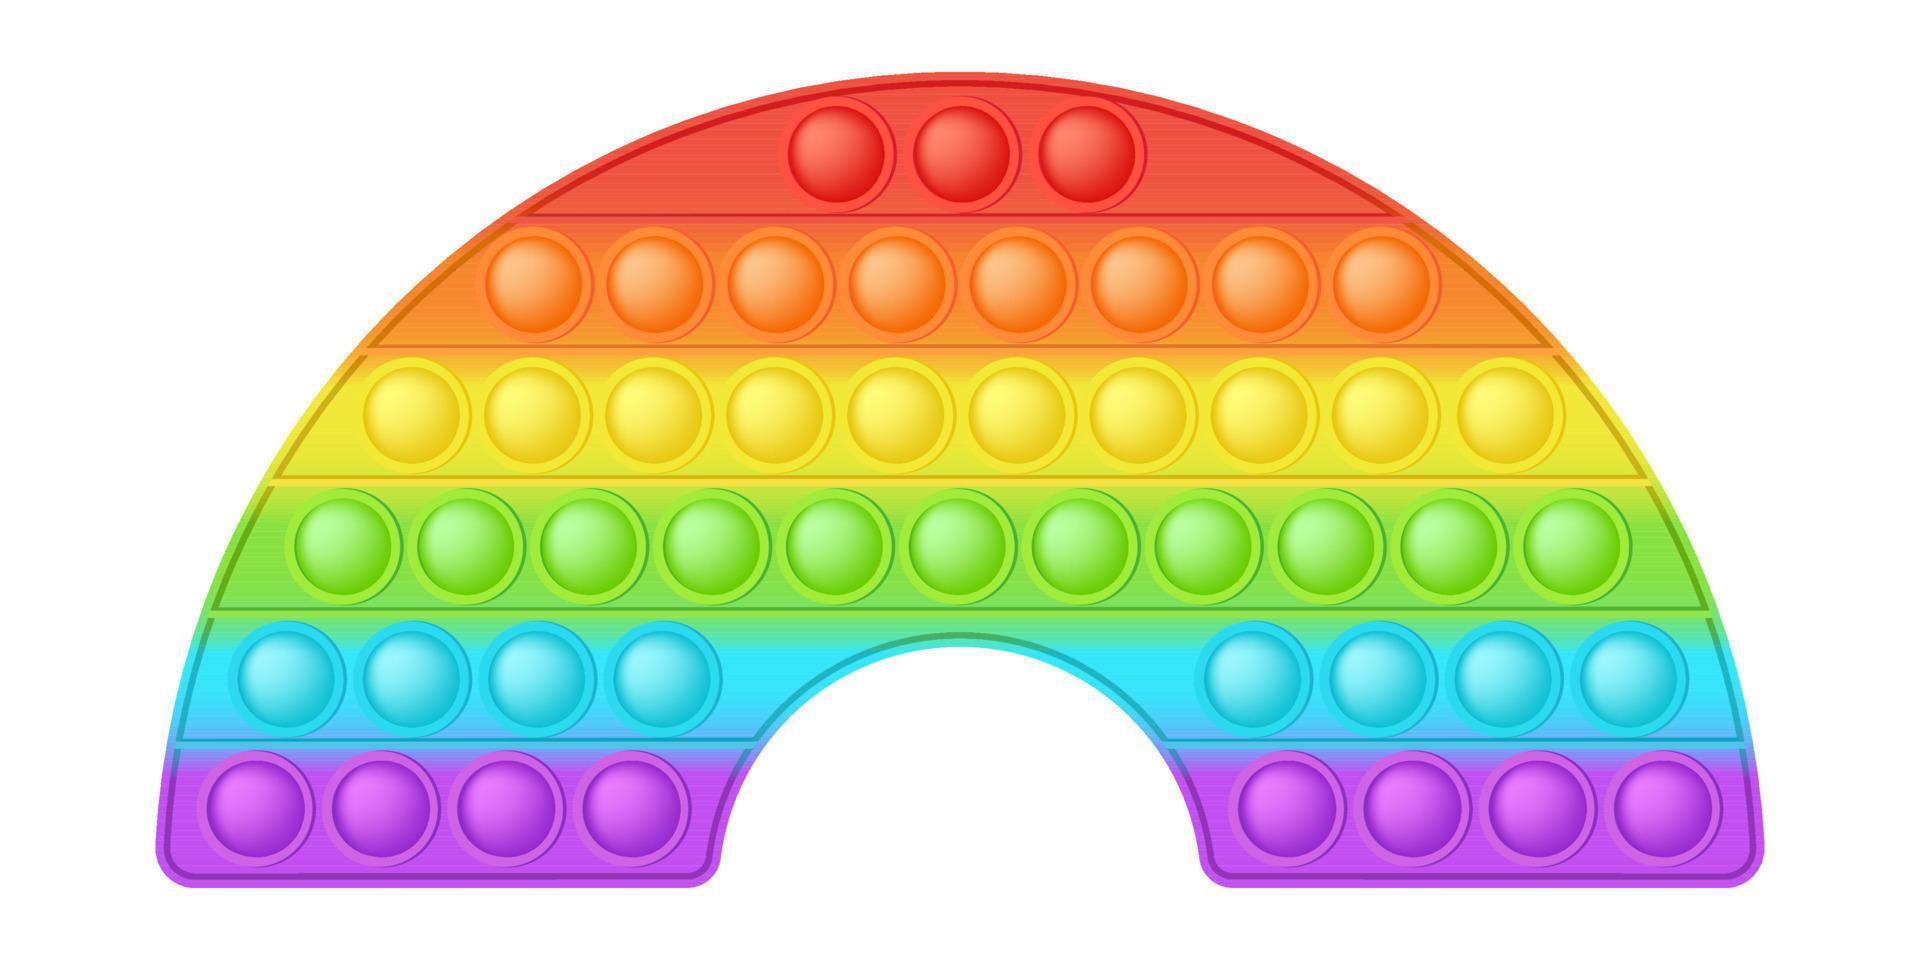 knallendes spielzeug leuchtendes regenbogen-silikonspielzeug für zappel. süchtig machendes sensorisches Blasenspielzeug für Kinderfinger. vektorillustration isoliert vektor